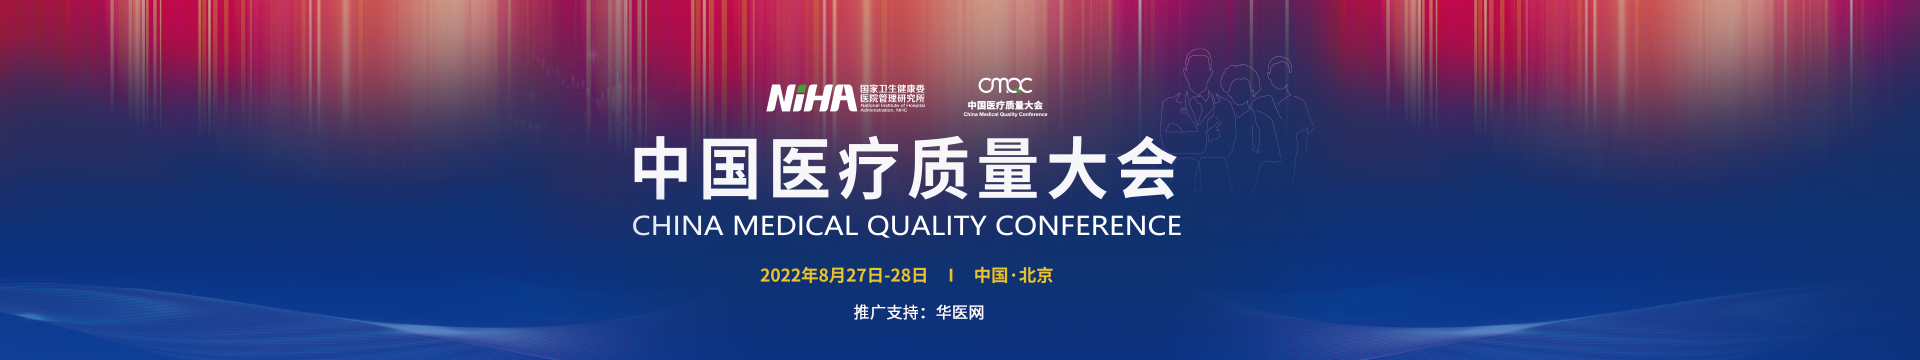 中国医疗质量大会